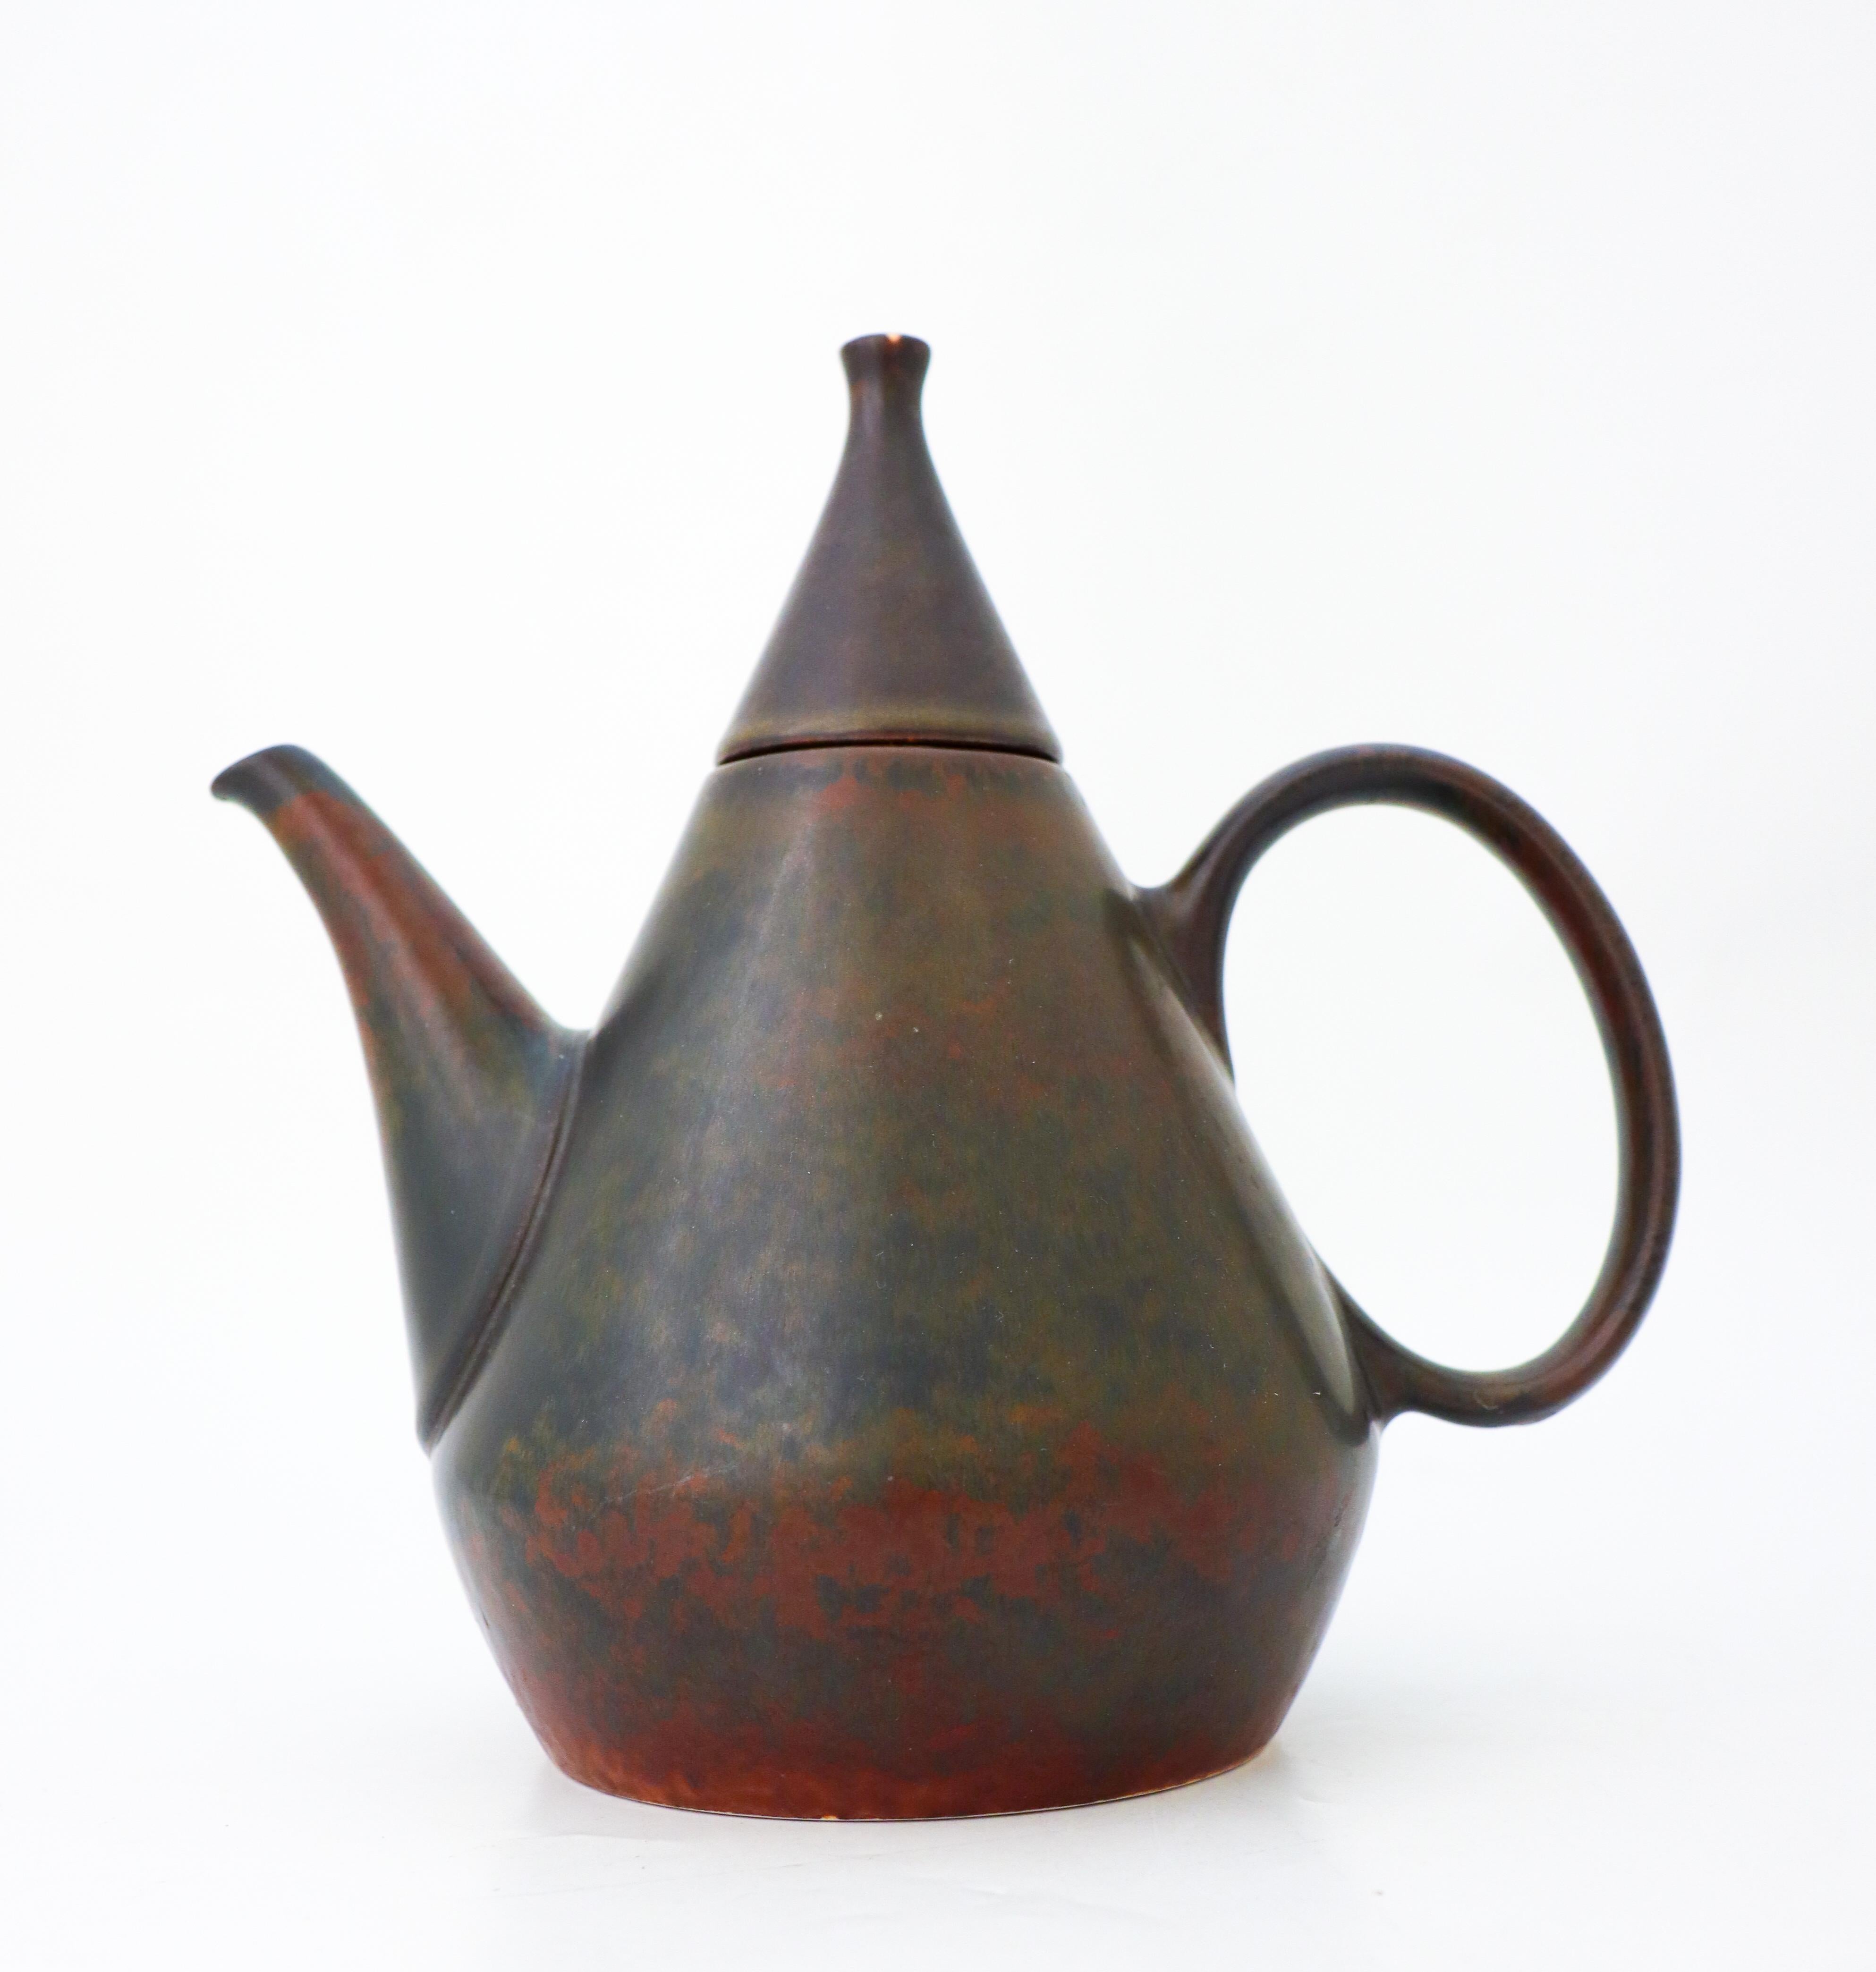 Eine braune Teekanne aus Keramik mit einer schönen Harfur-Glasur, entworfen von Carl-Harry Stålhane in Rörstrand, Schweden in den 1950er Jahren. Die Teekanne ist 21,5 cm hoch und in ausgezeichnetem Zustand, sie ist als 2. Qualität gekennzeichnet.